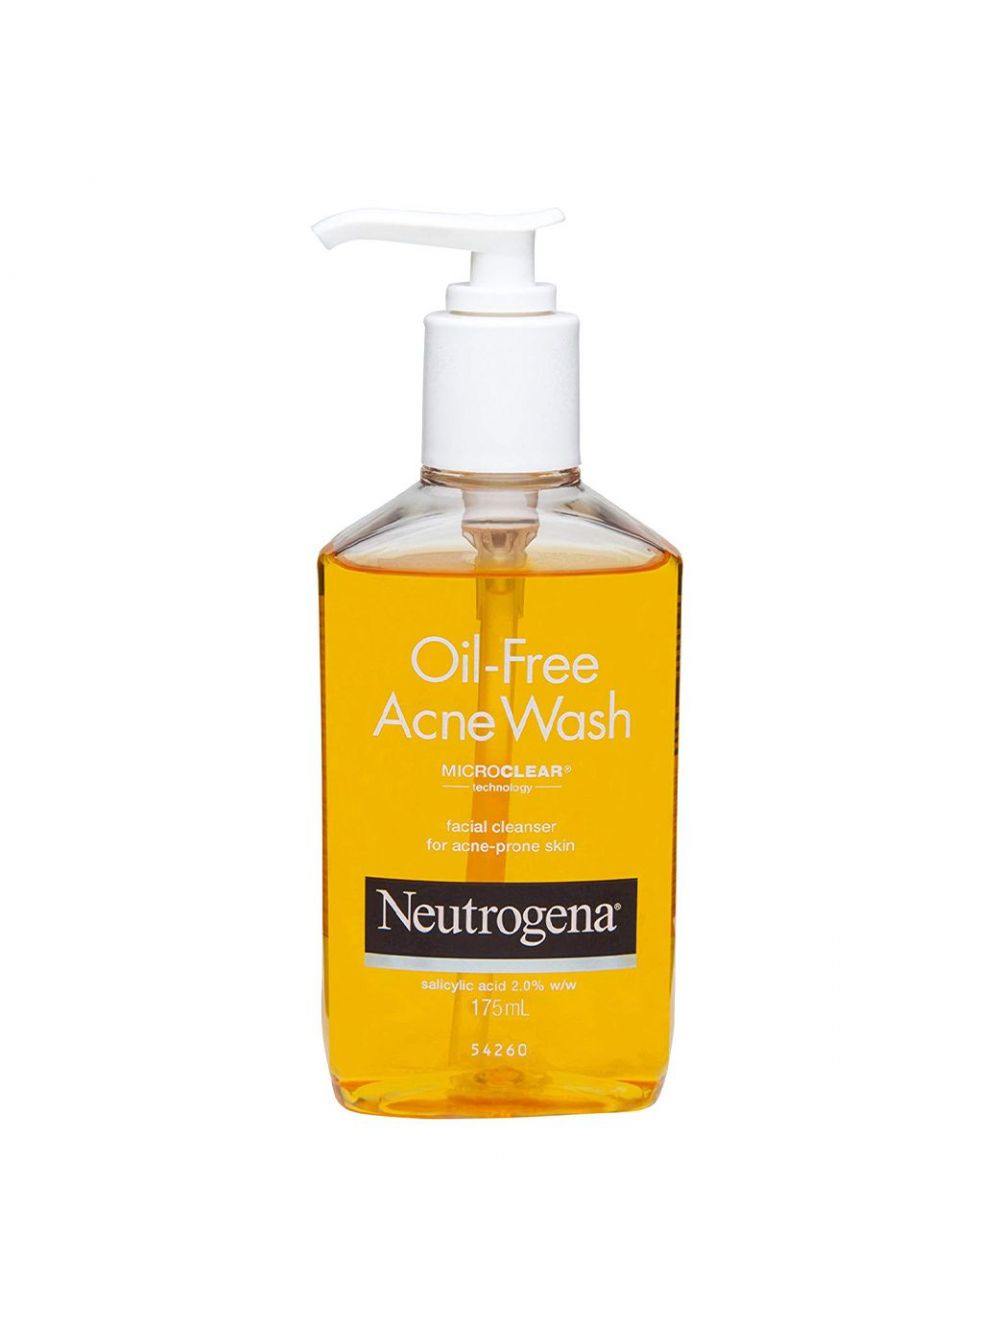 Neutrogena Acne-Prone Skin Care Combo - Niram